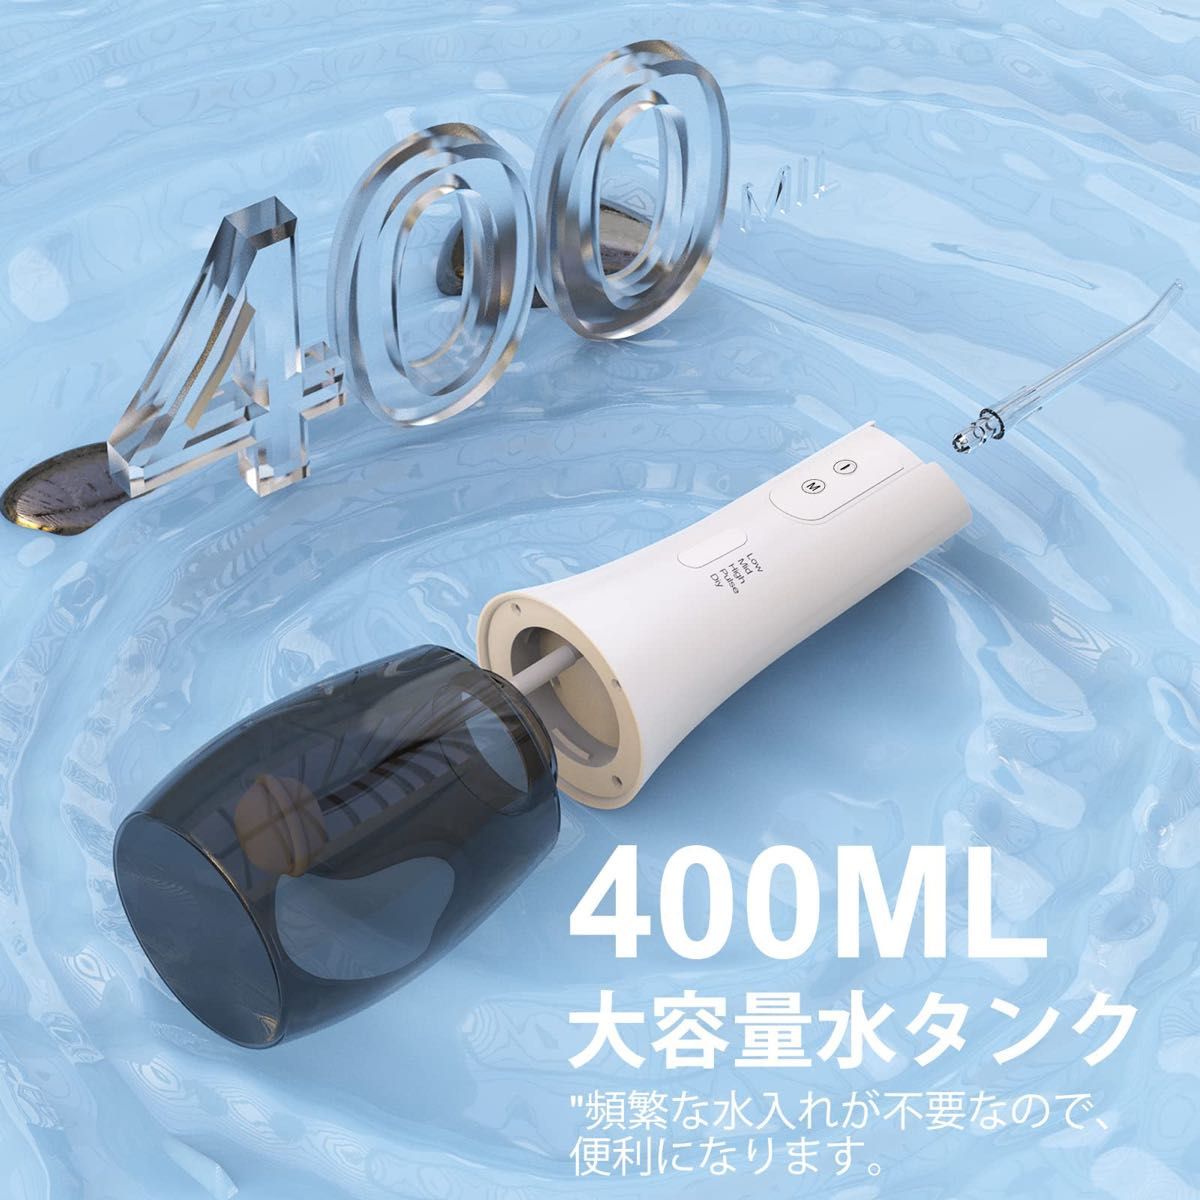 口腔洗浄器 ジェットウォッシャー 5つモード 替えノズル4種類400MLタンク オーラルケア  マウスウォッシャー